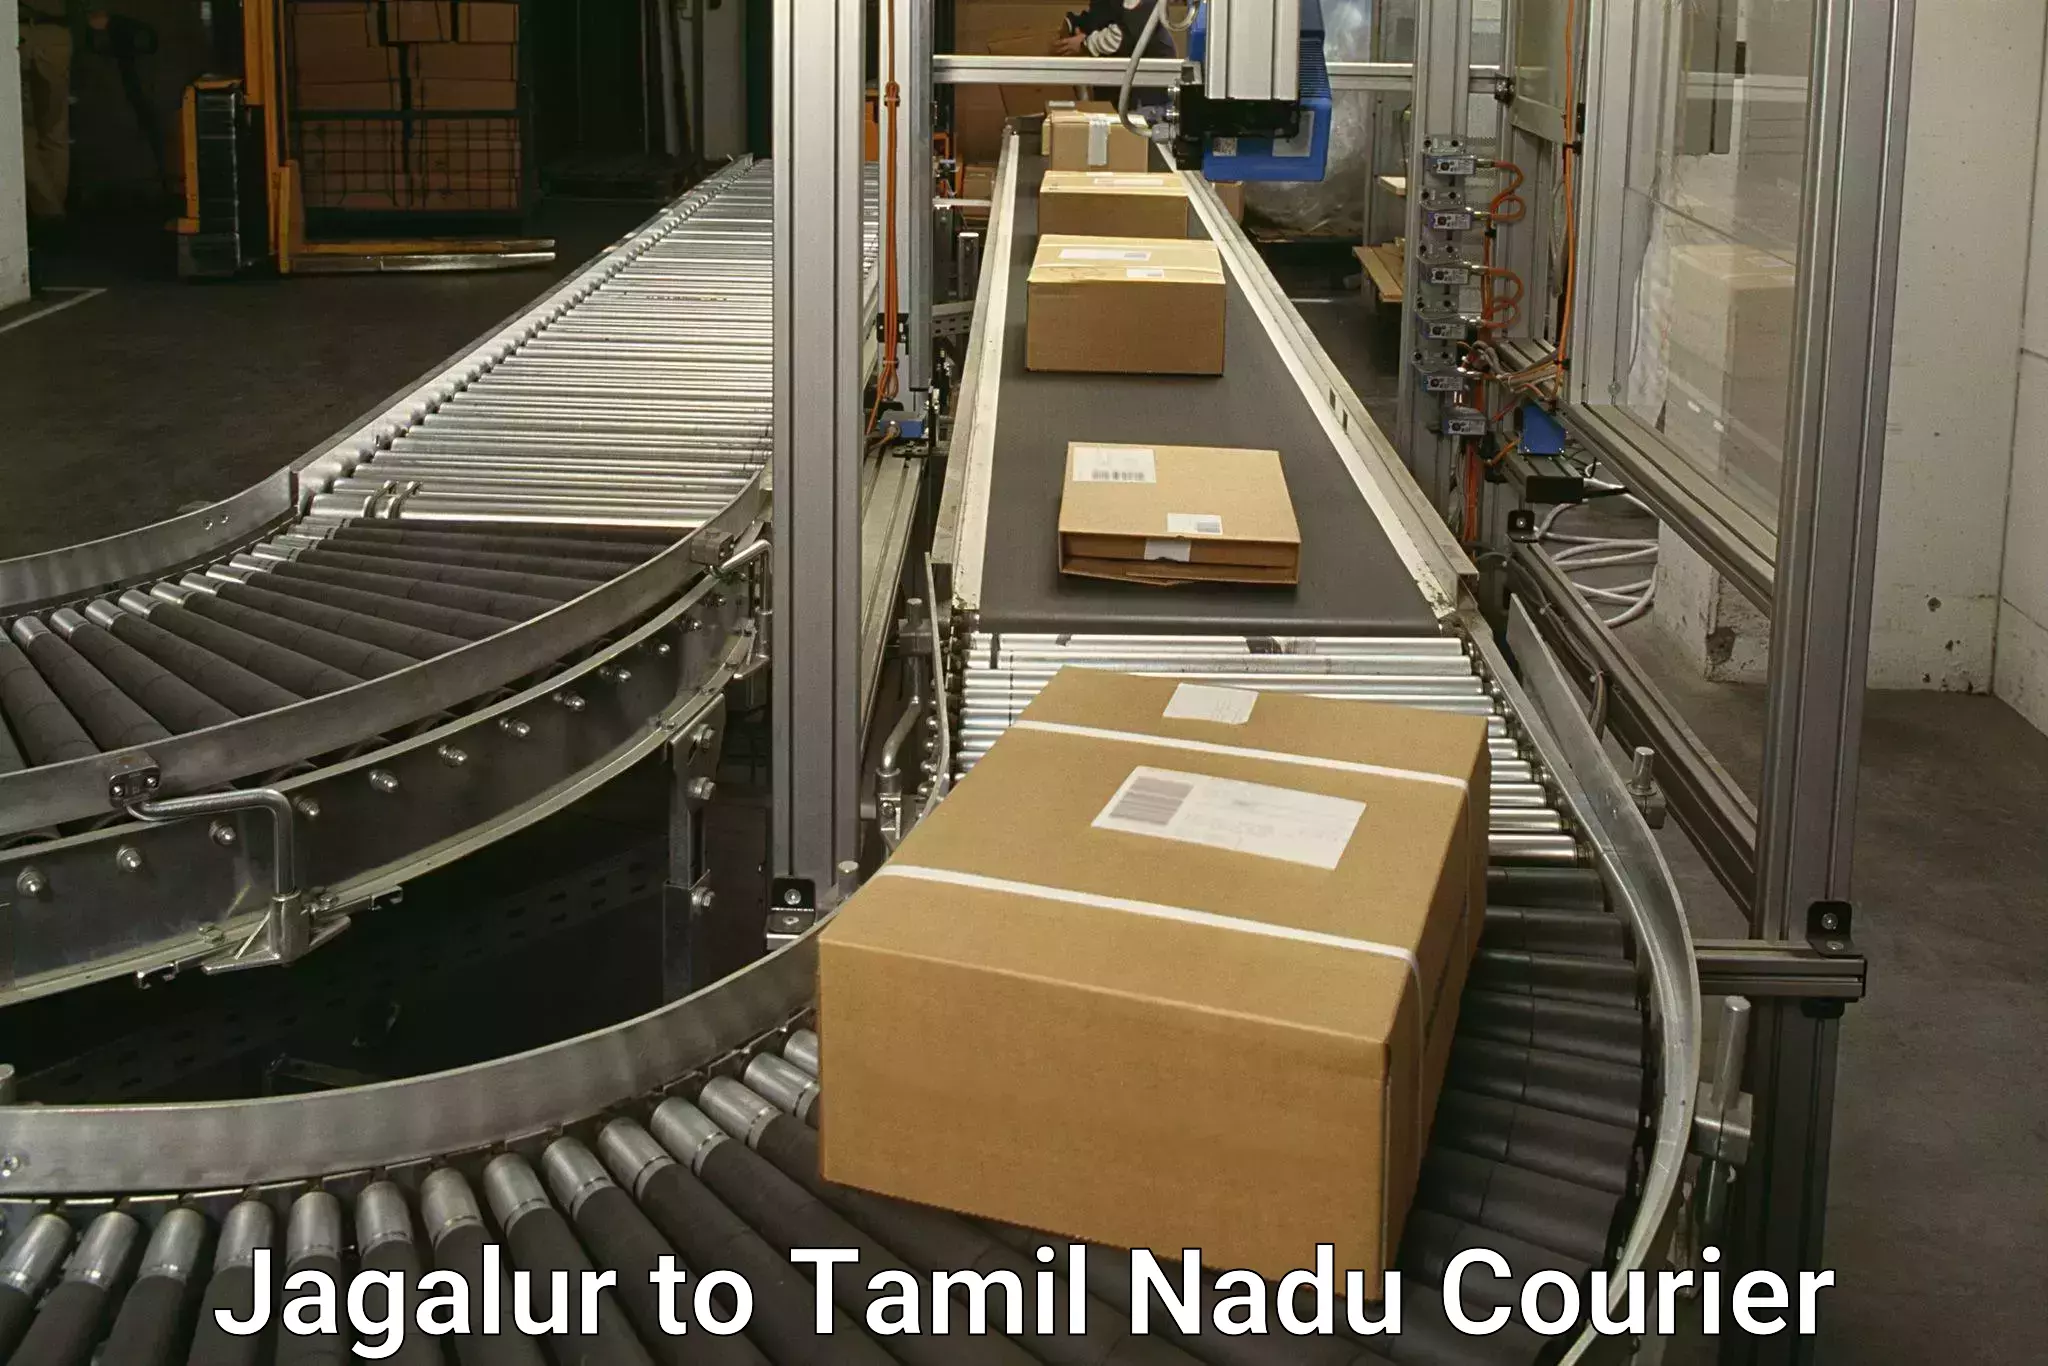 International courier rates Jagalur to Tiruvarur